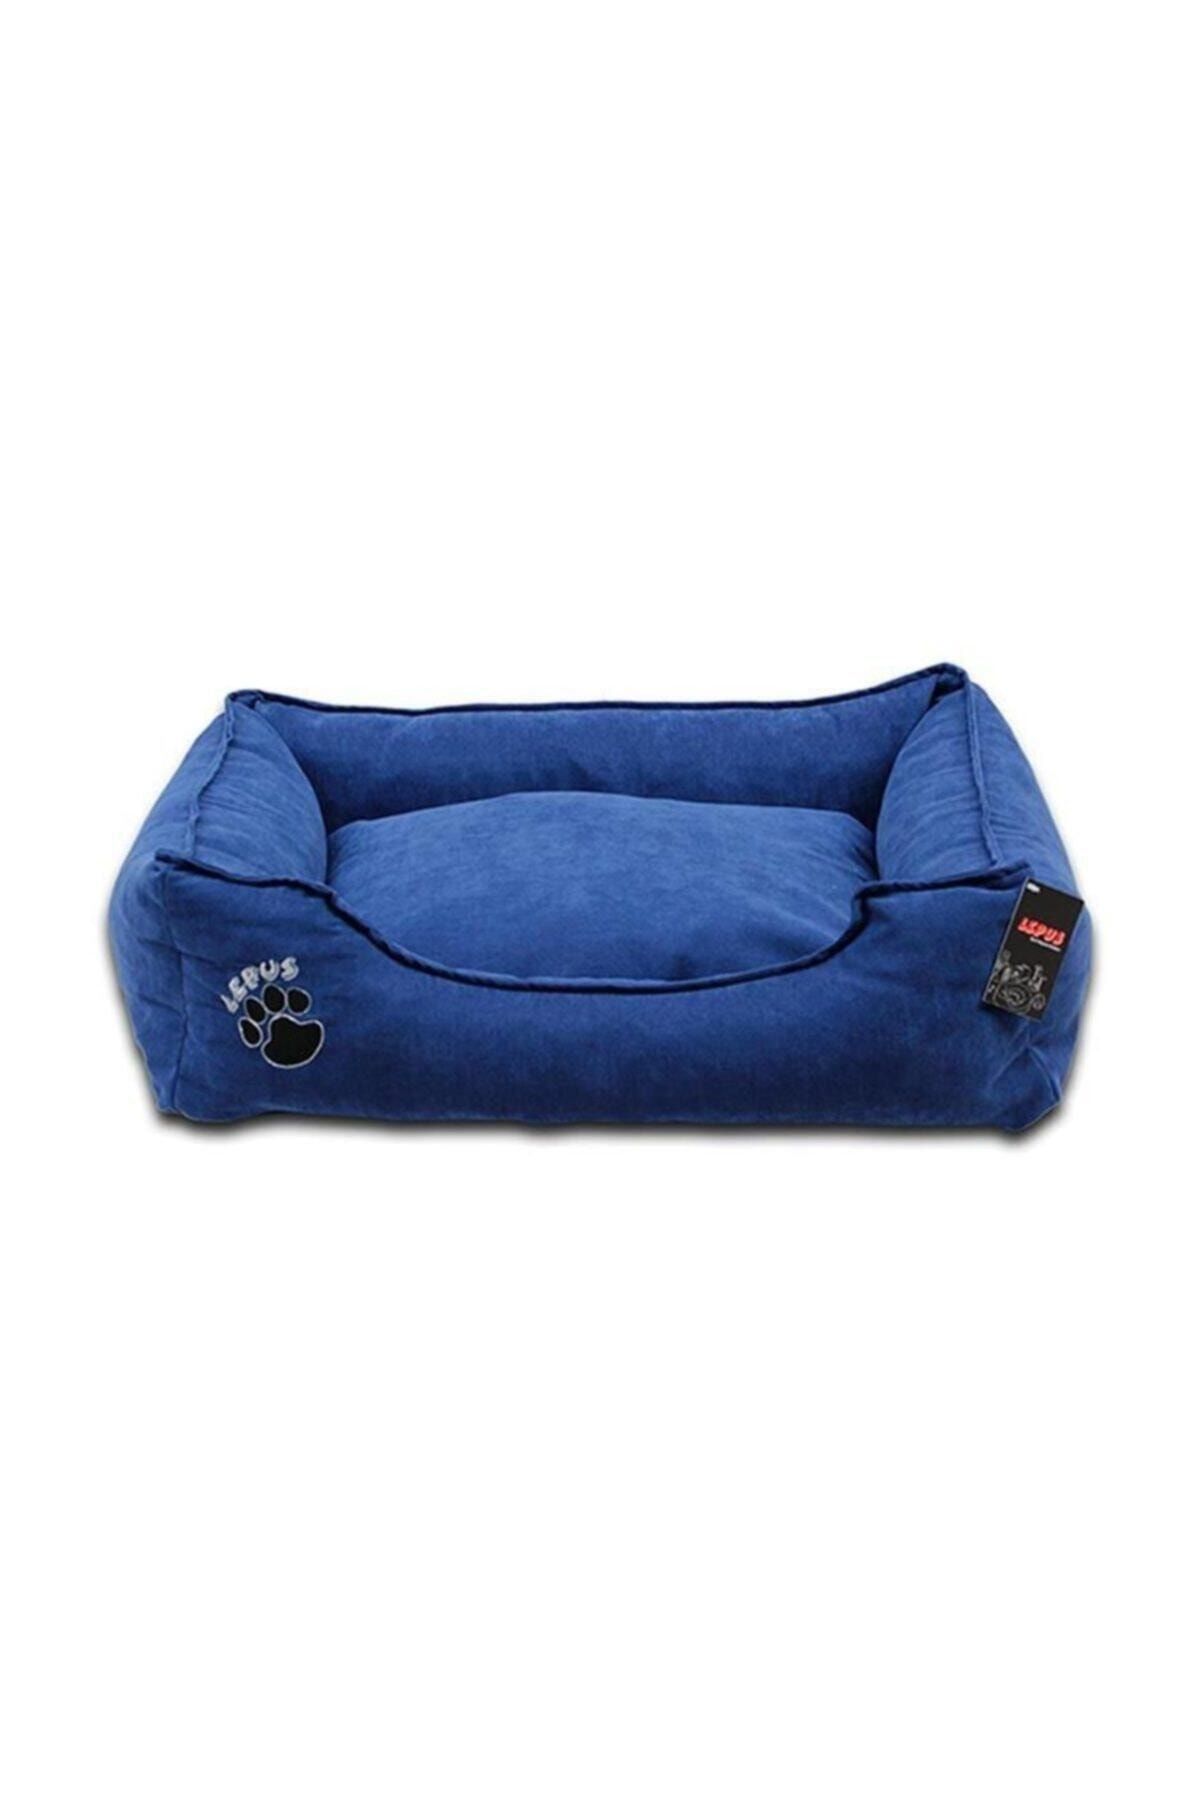 Lepus Soft Fermuarlı Kedi & Köpek Yatağı Mavi Small